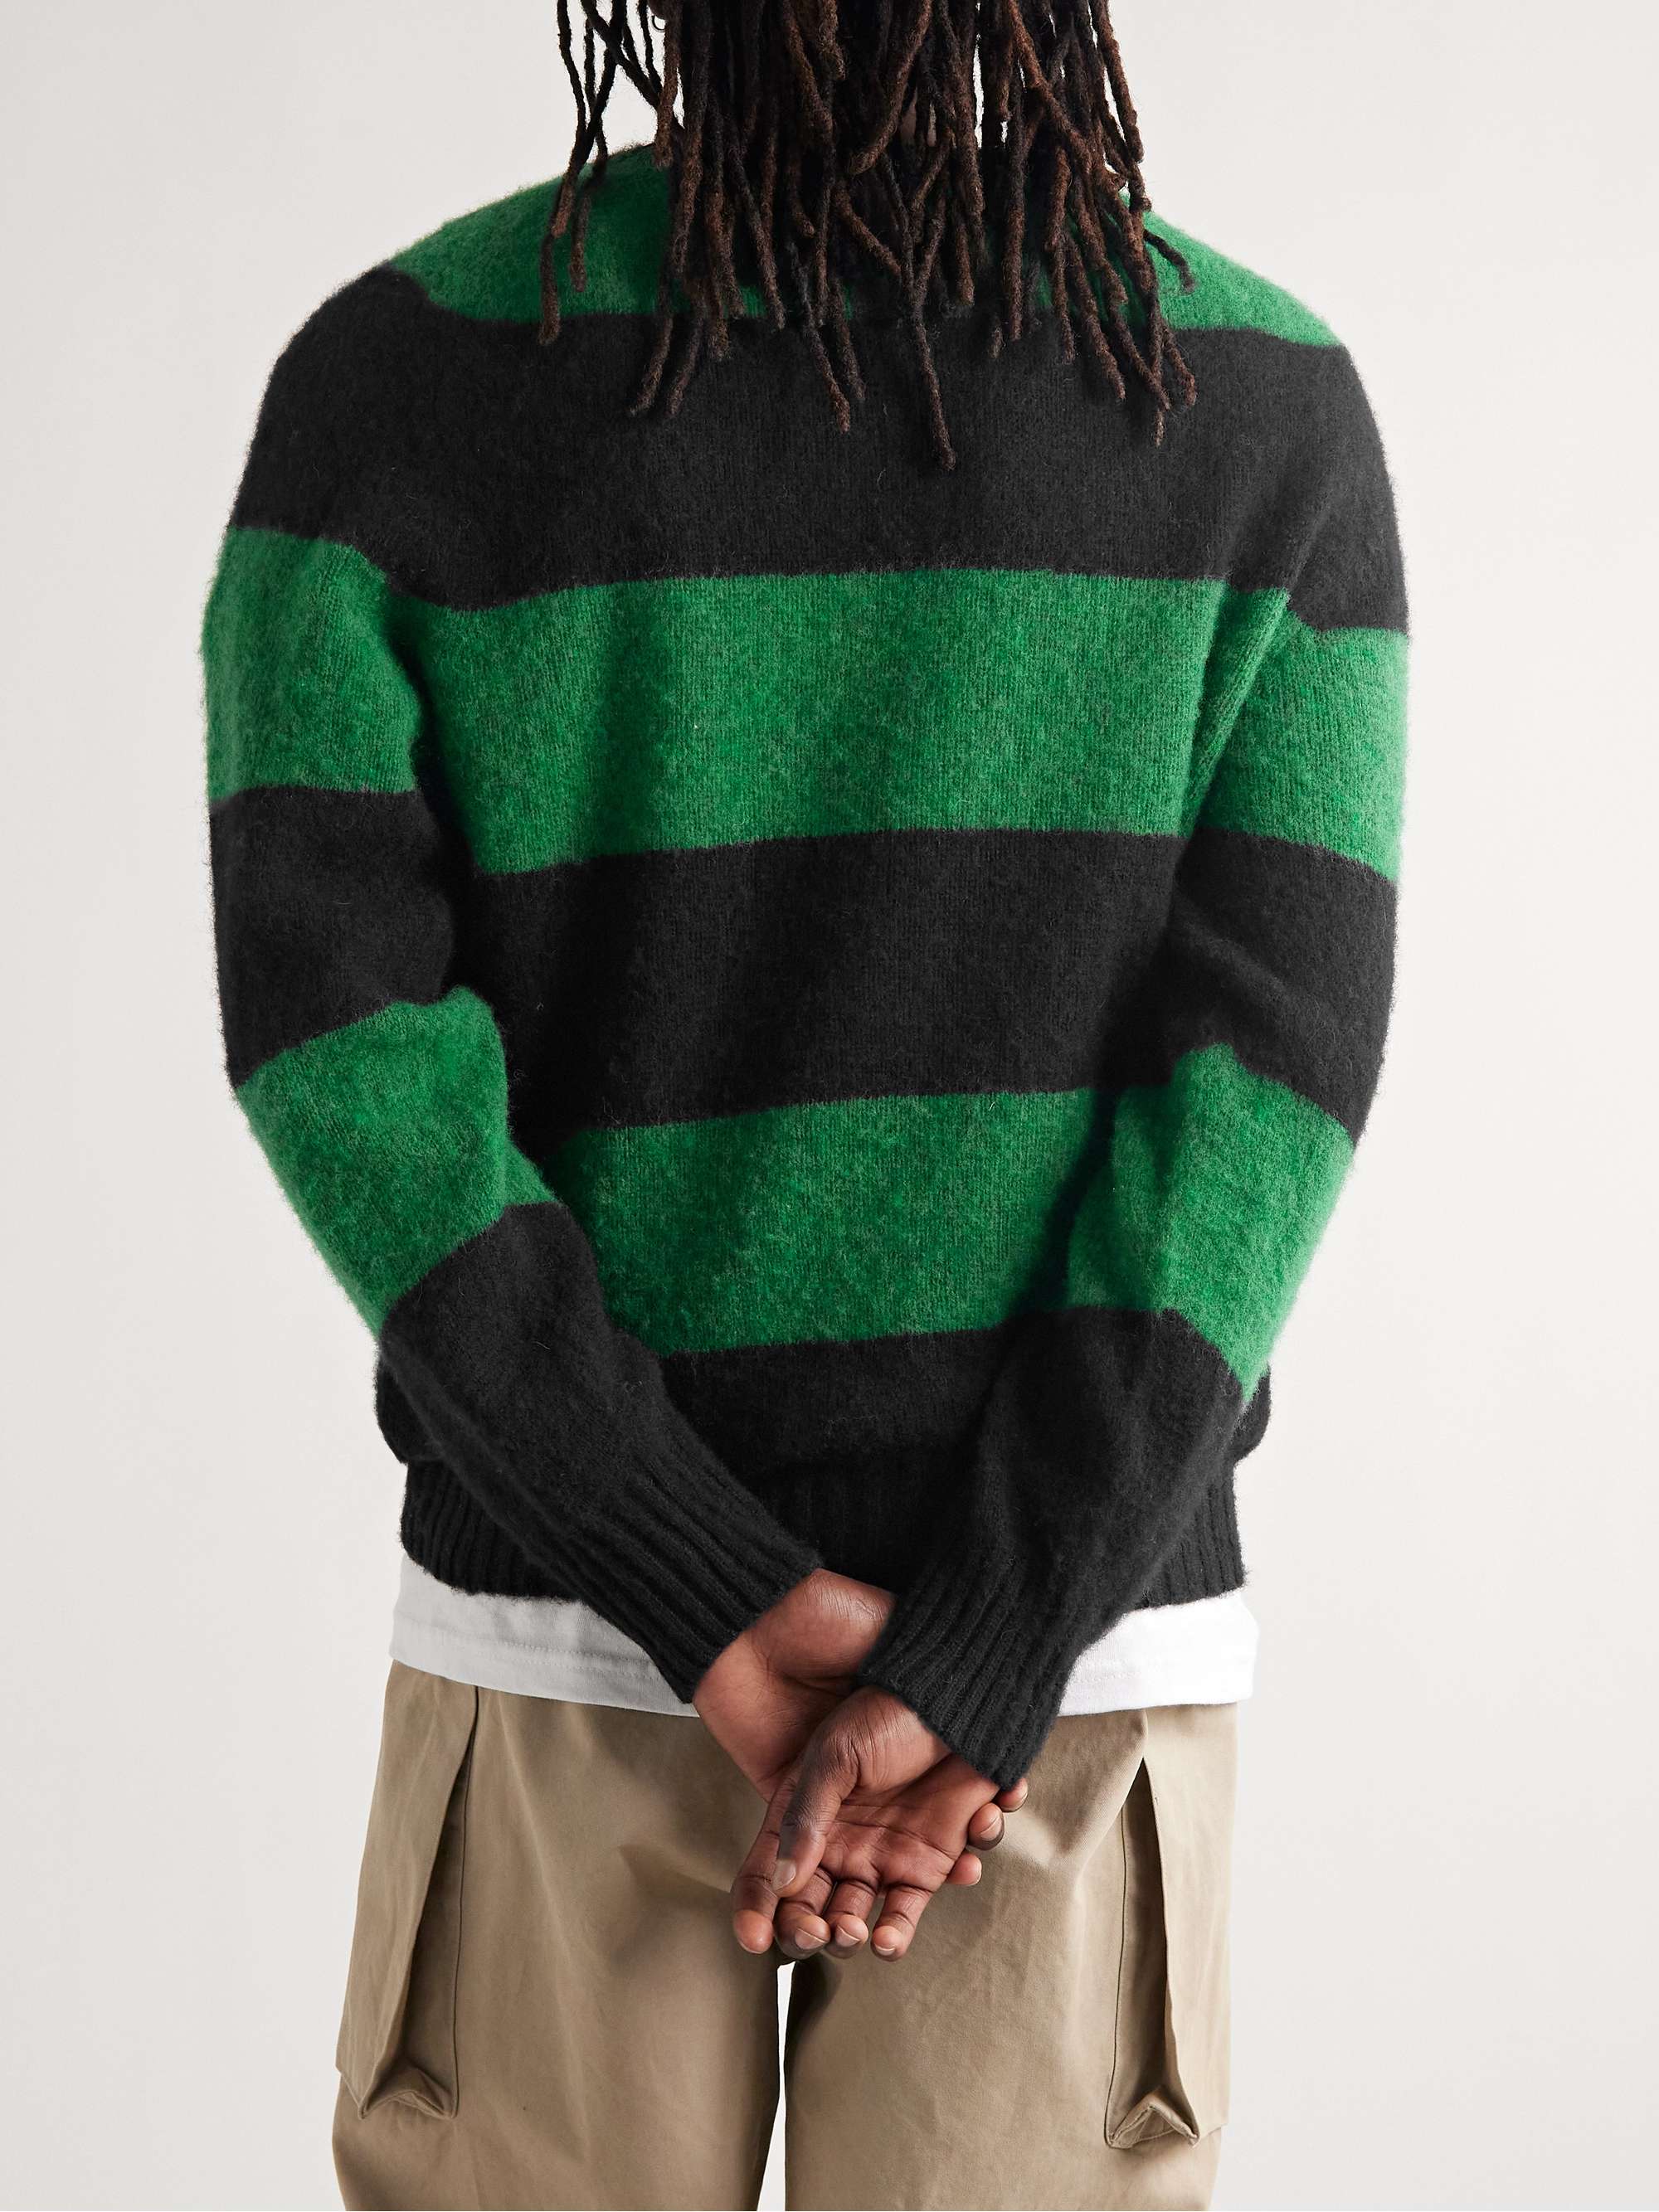 YMC Striped Wool Sweater